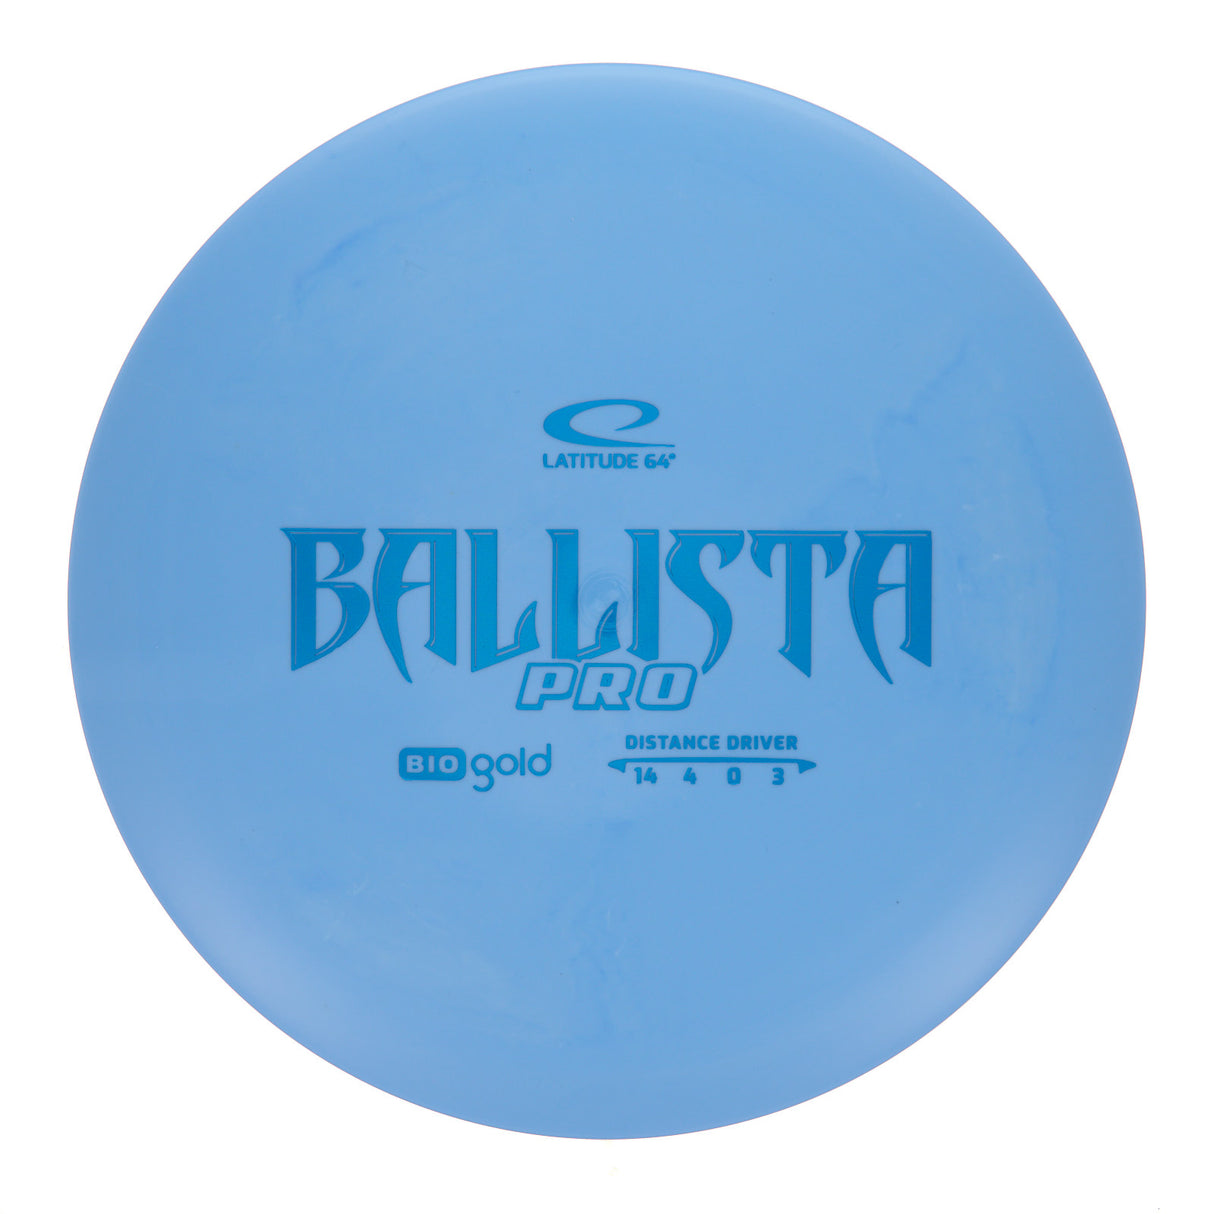 Latitude 64 Ballista Pro - Bio Gold 171g | Style 0003